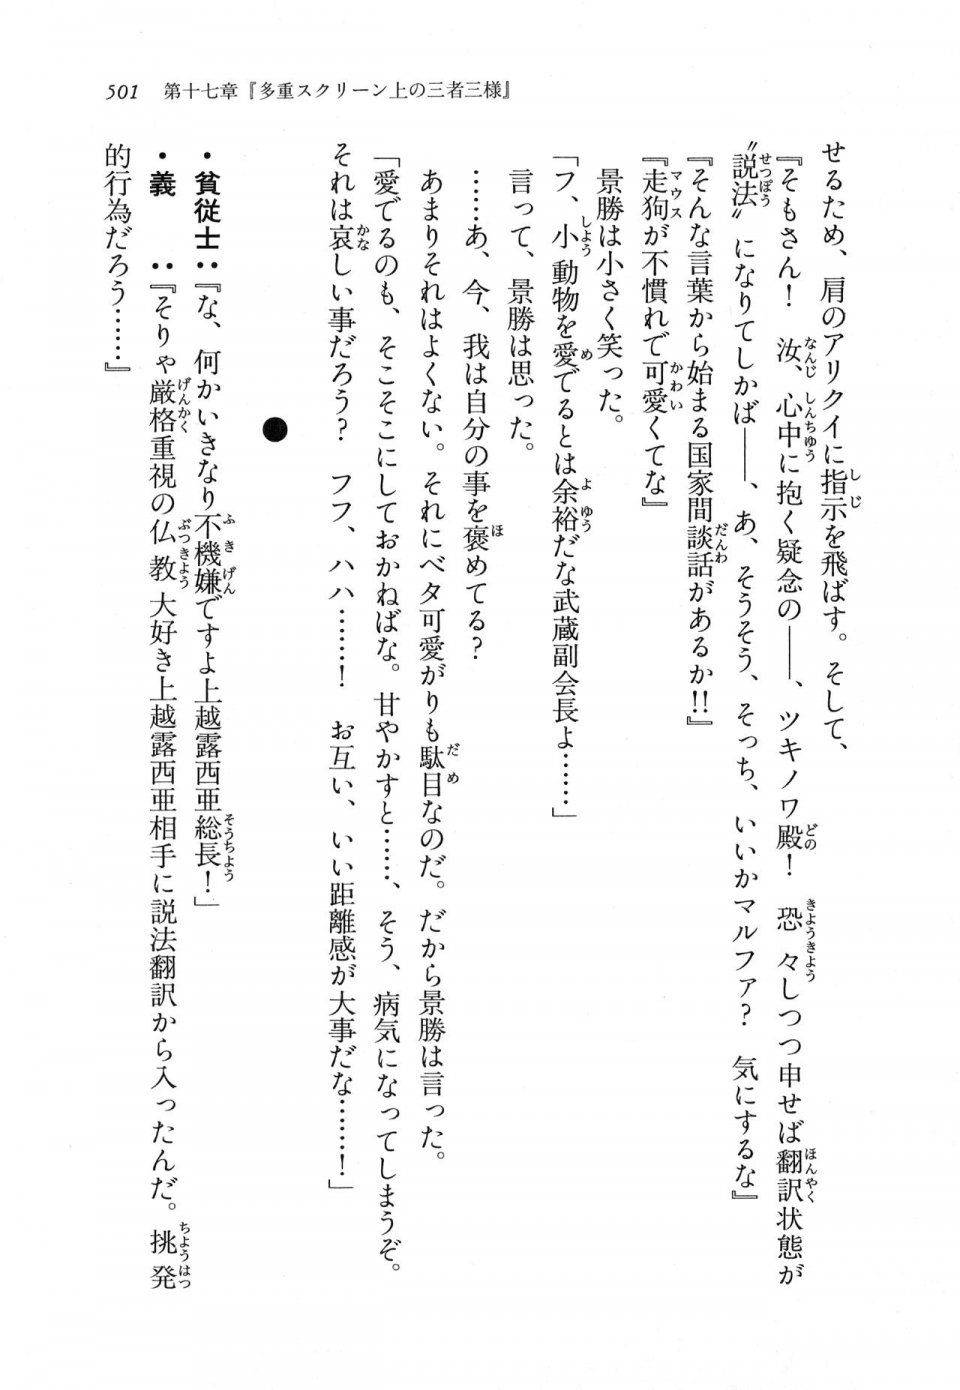 Kyoukai Senjou no Horizon LN Vol 11(5A) - Photo #501